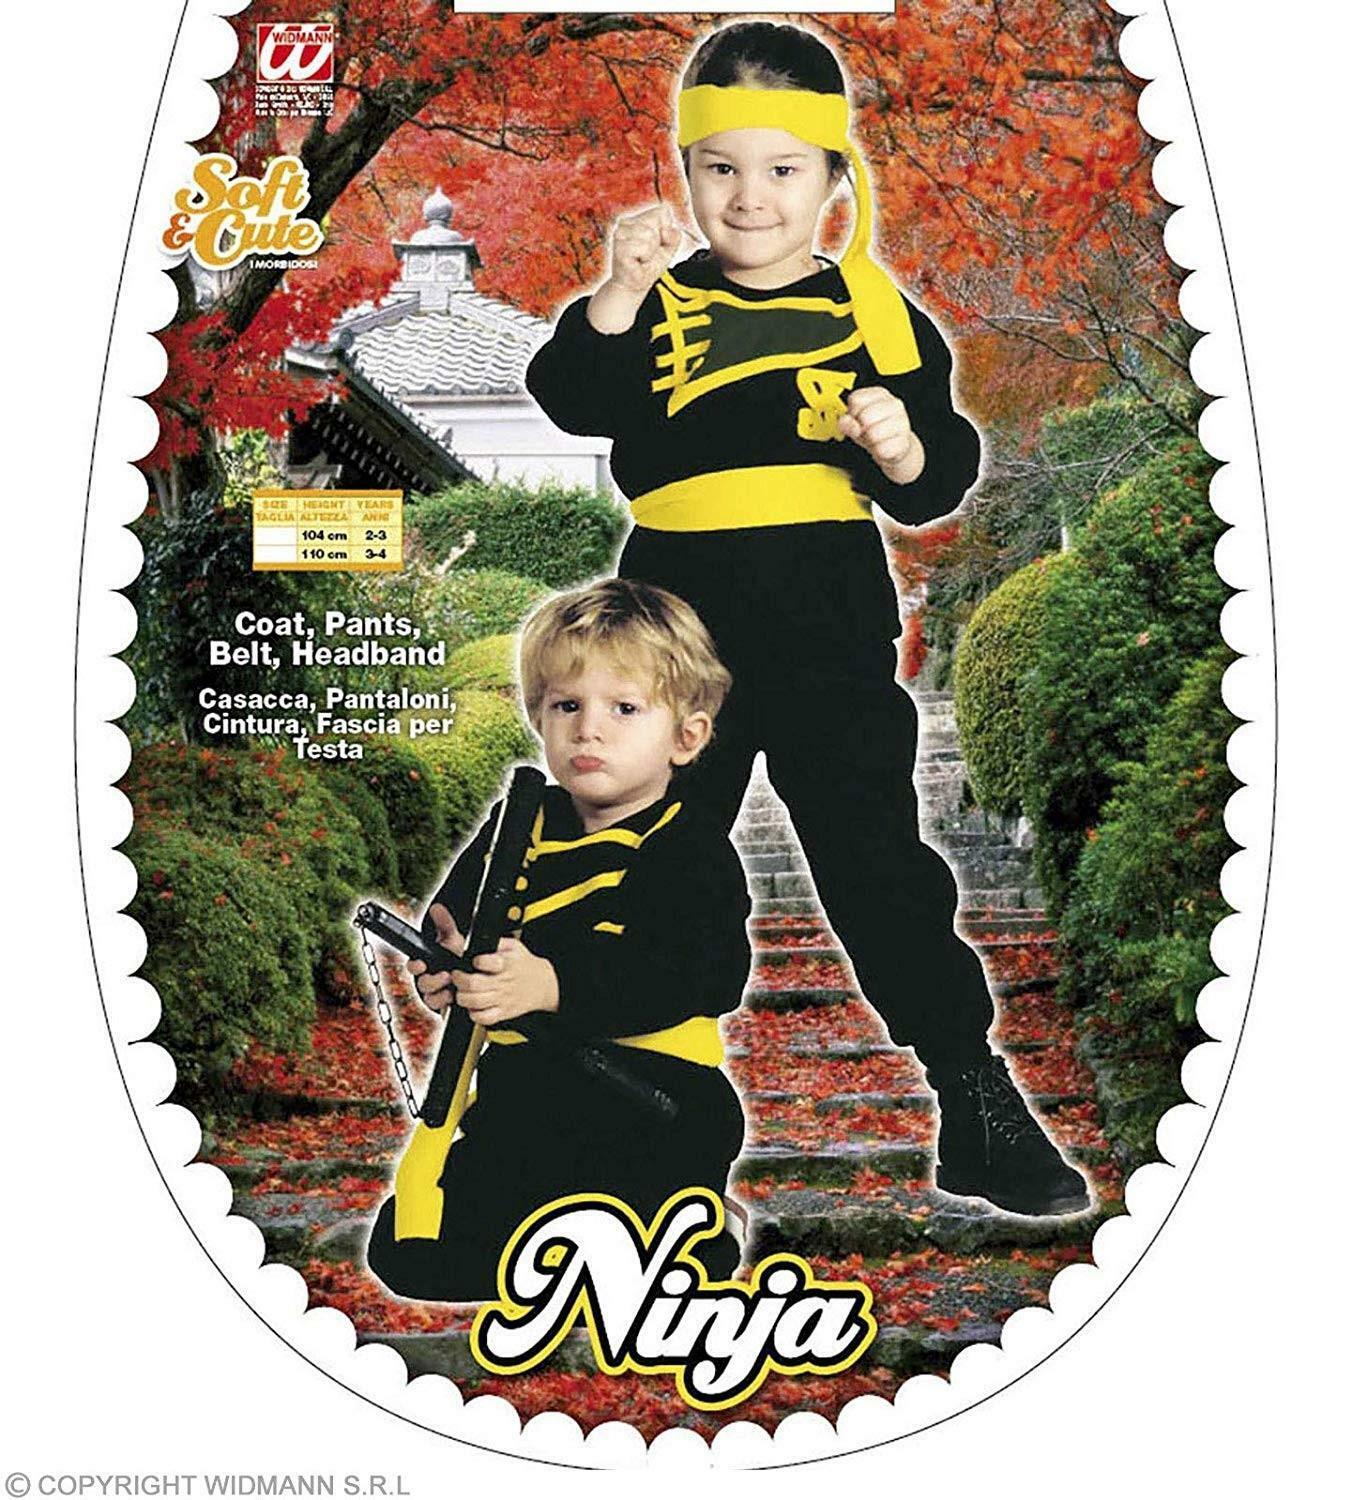 widmann costume ninja taglia 3/4 anni